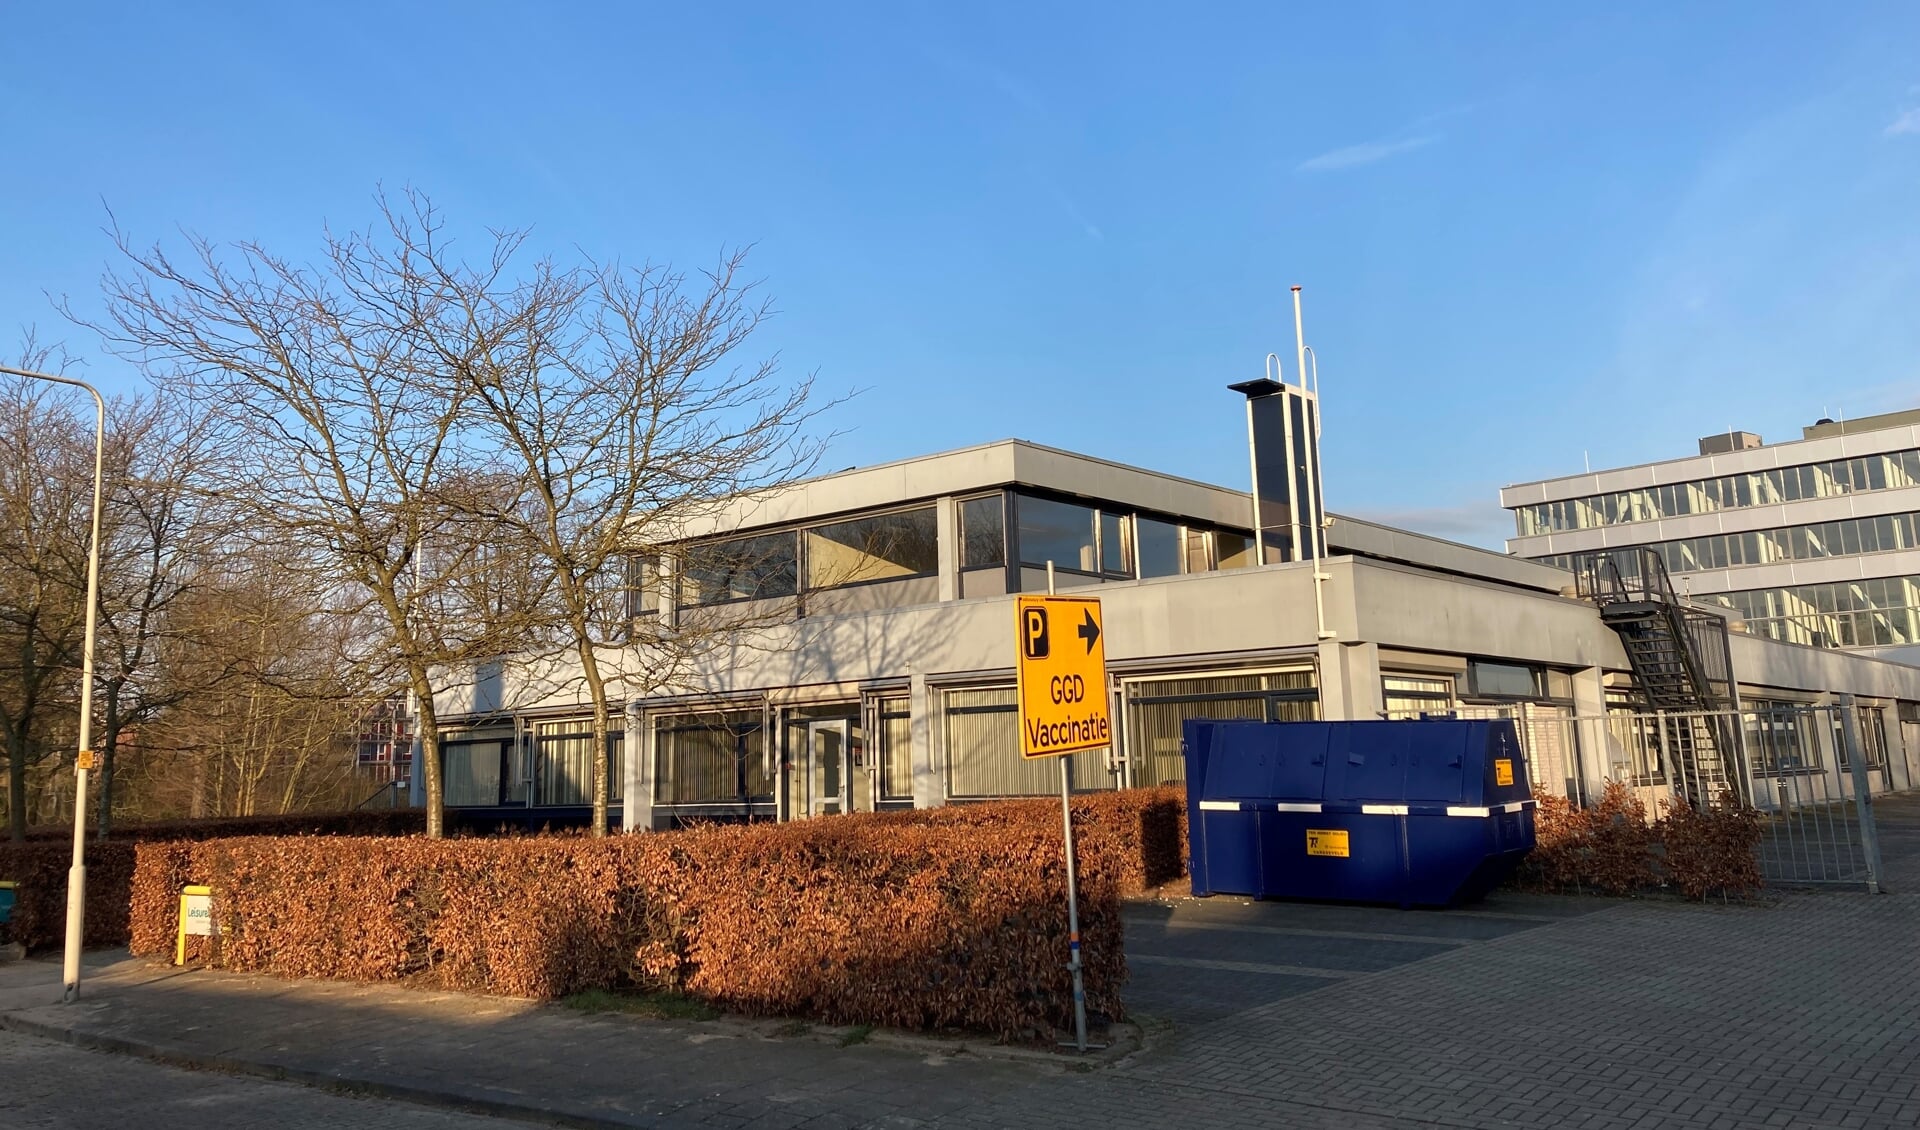  Mobiele 70-plussers kunnen op afspraak hun herhaalprik tegen corona onder meer halen bij deze vaccinatie-locatie in Arnhem Presikhaaf. 